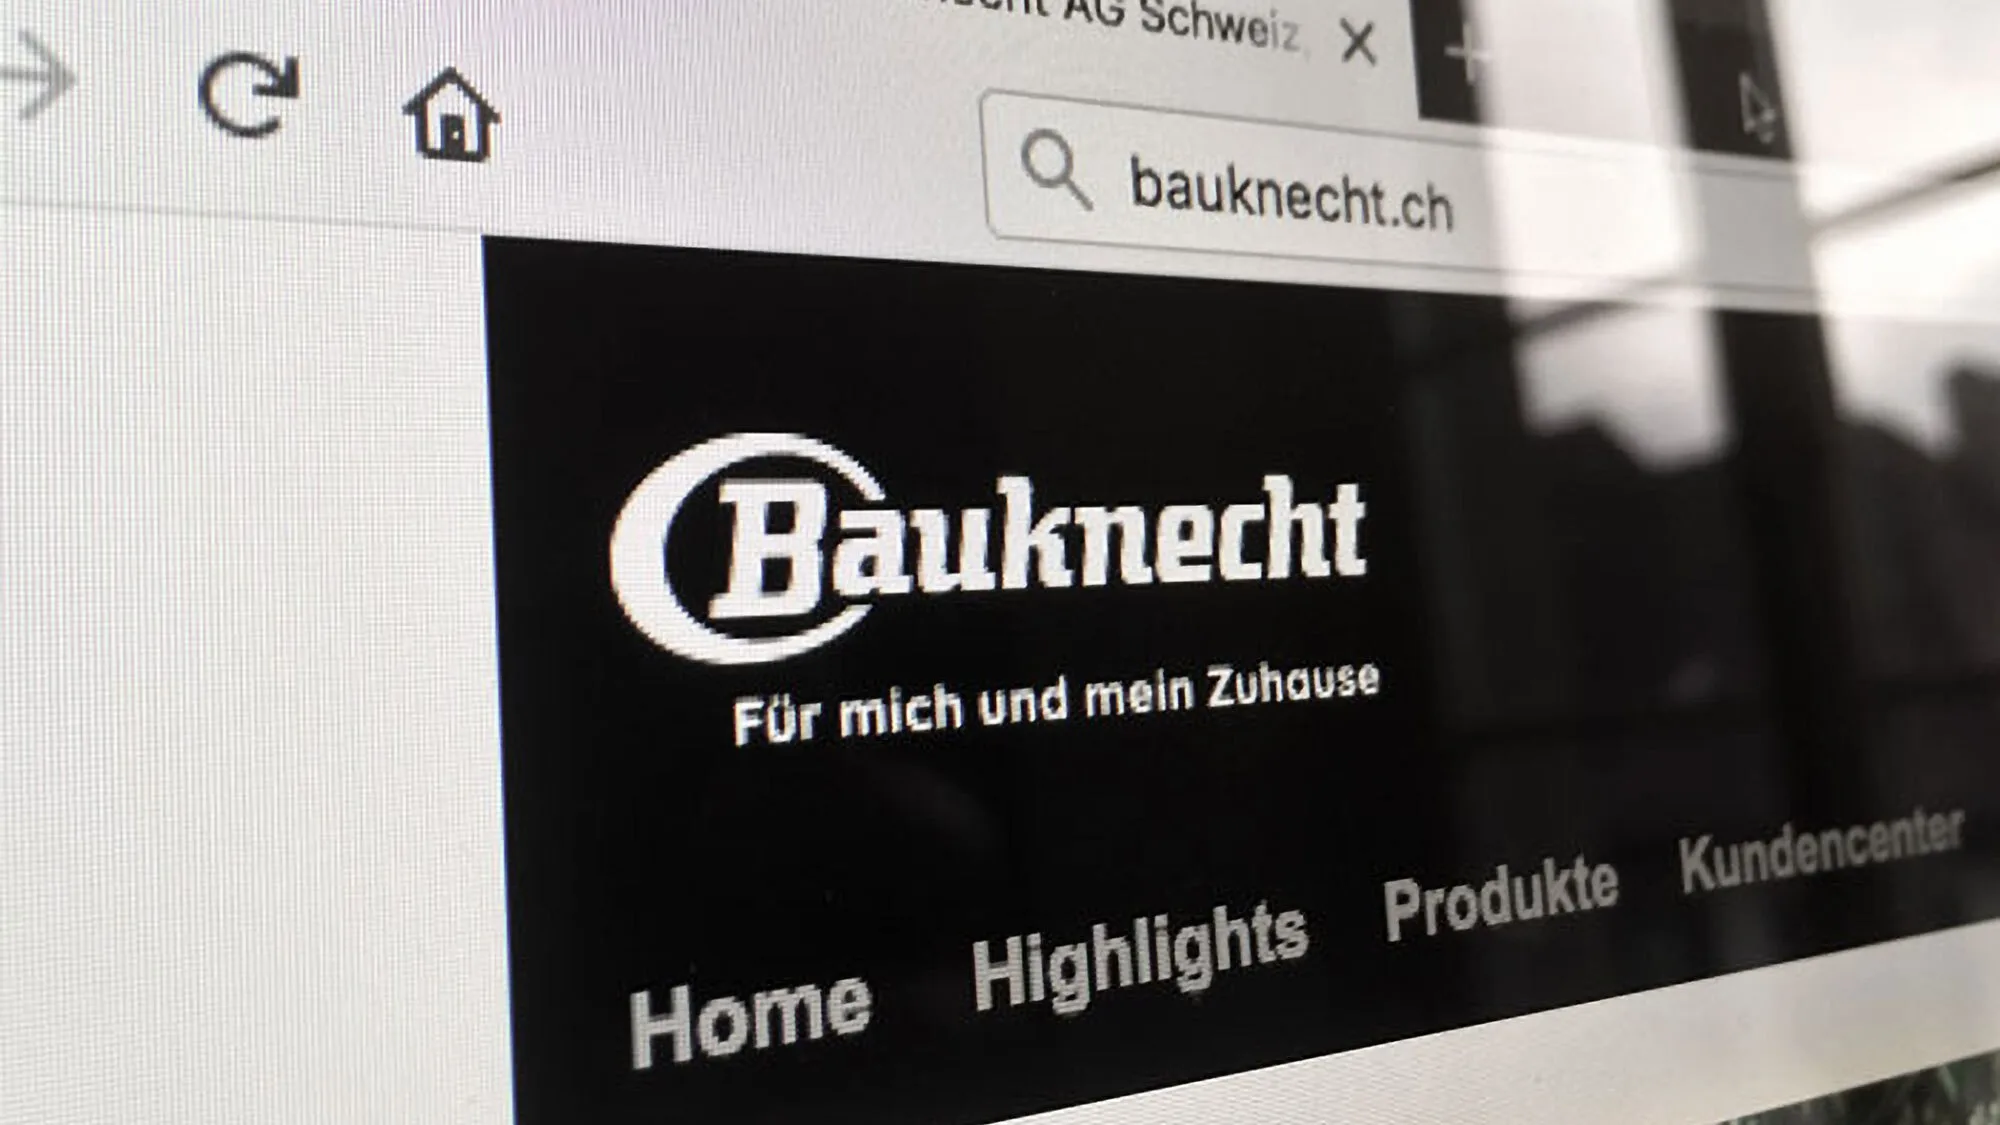 Bauknecht AG – Website